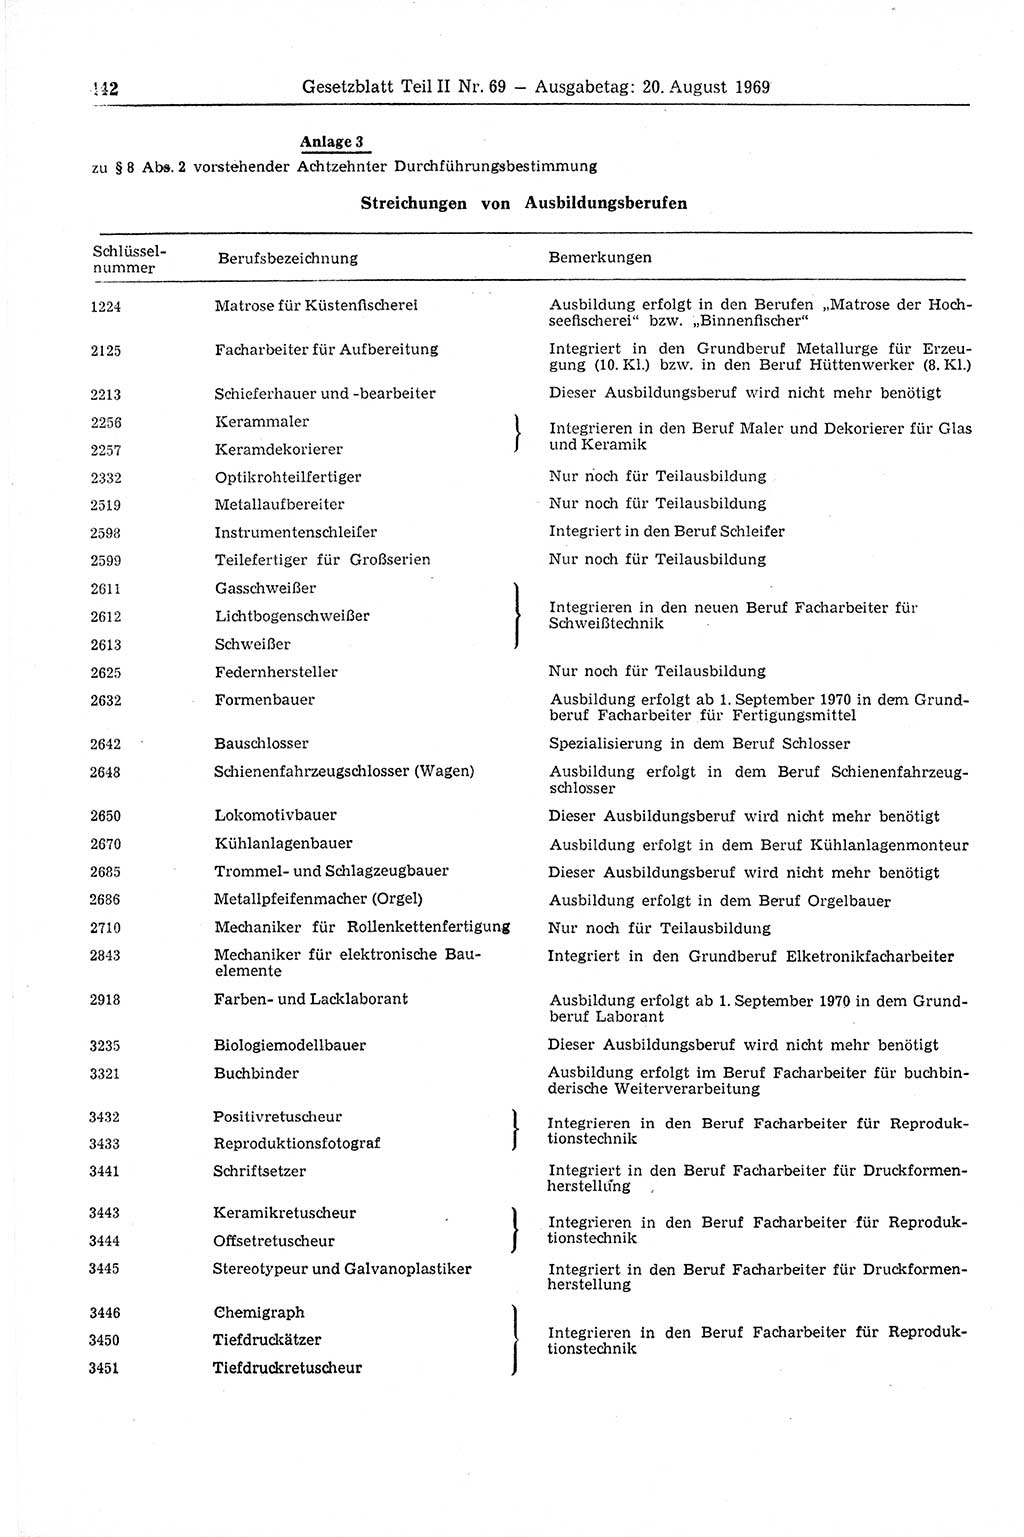 Gesetzblatt (GBl.) der Deutschen Demokratischen Republik (DDR) Teil ⅠⅠ 1969, Seite 442 (GBl. DDR ⅠⅠ 1969, S. 442)